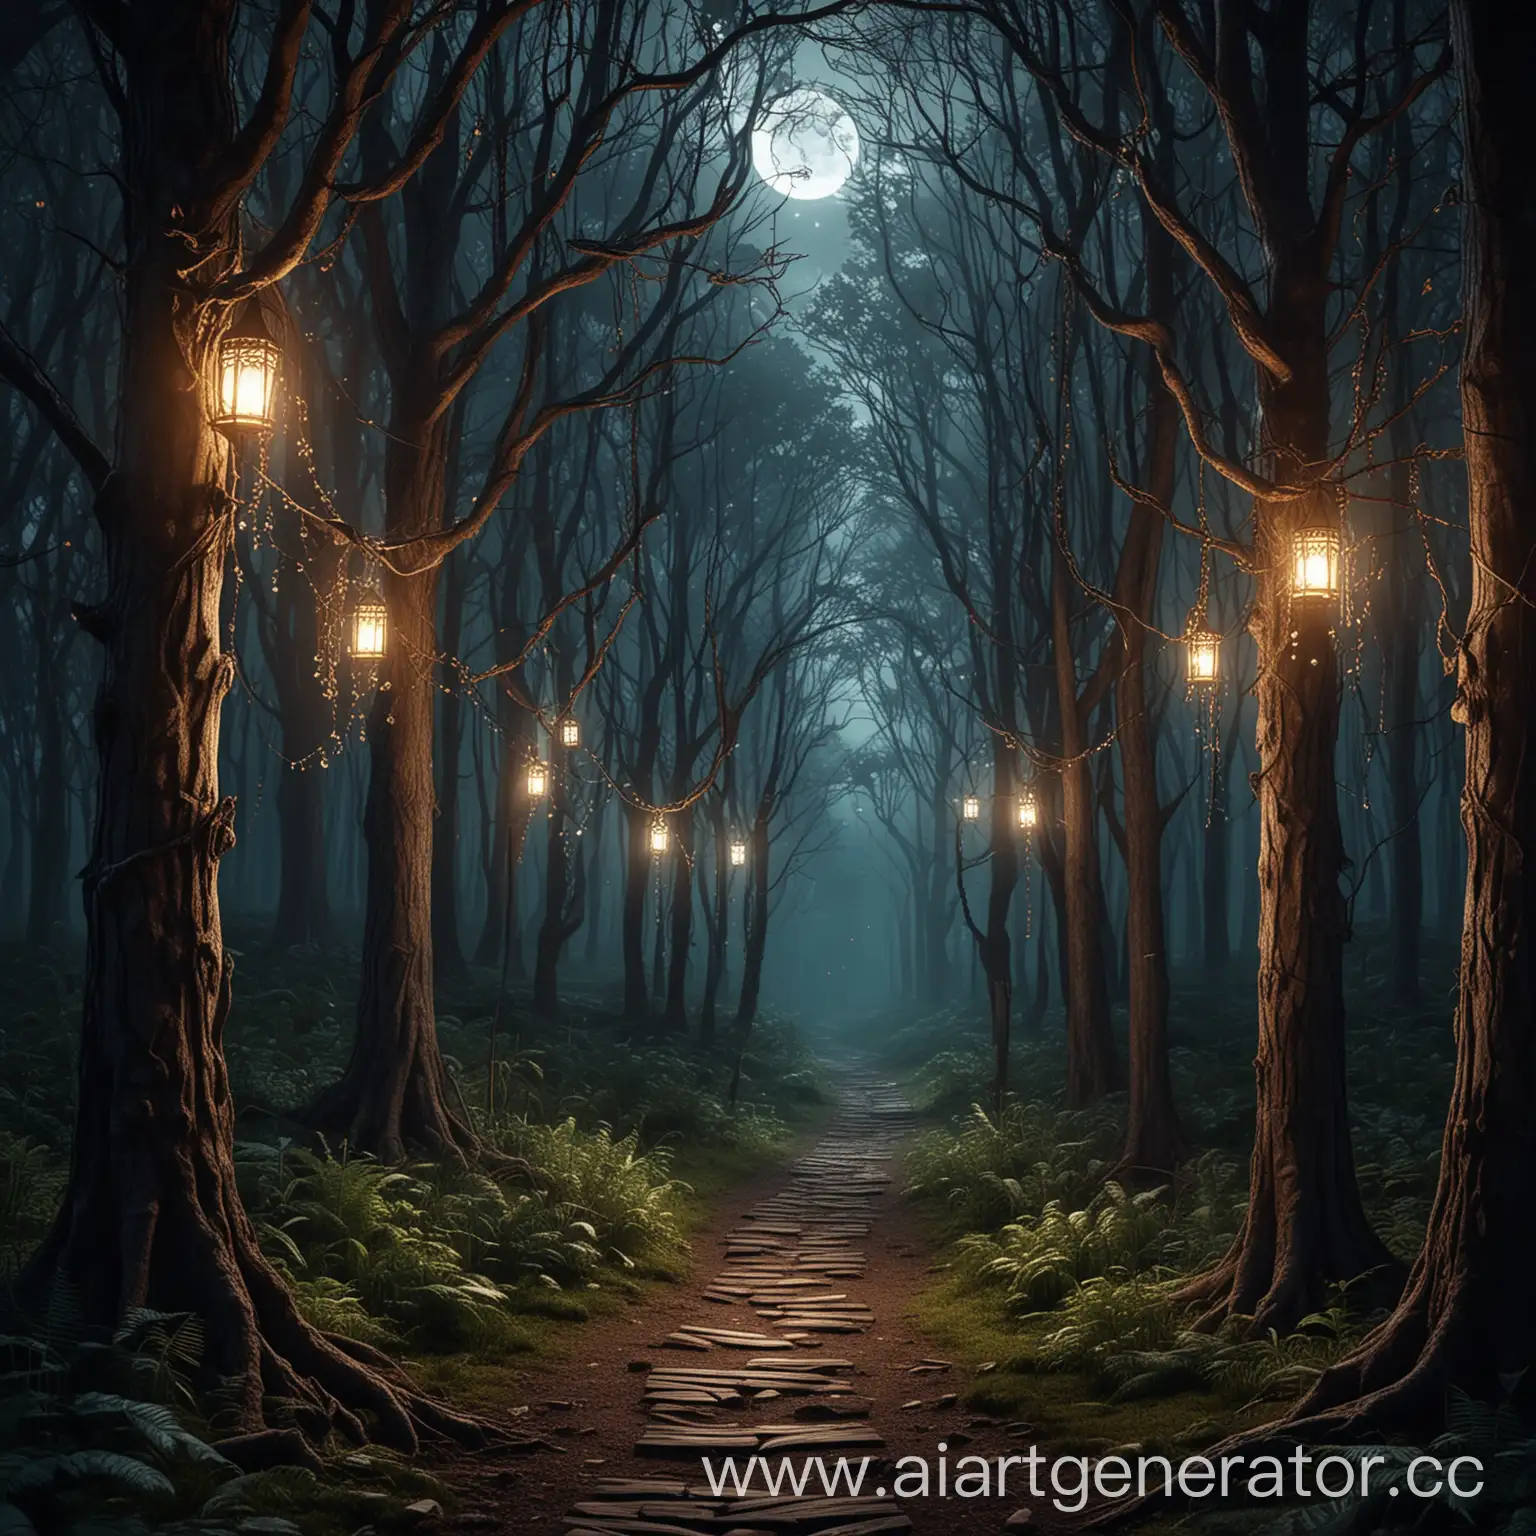 загадочный лес, свет луны тропинка, деревья с подвешенными на них узорчатыми , таинственное свечение